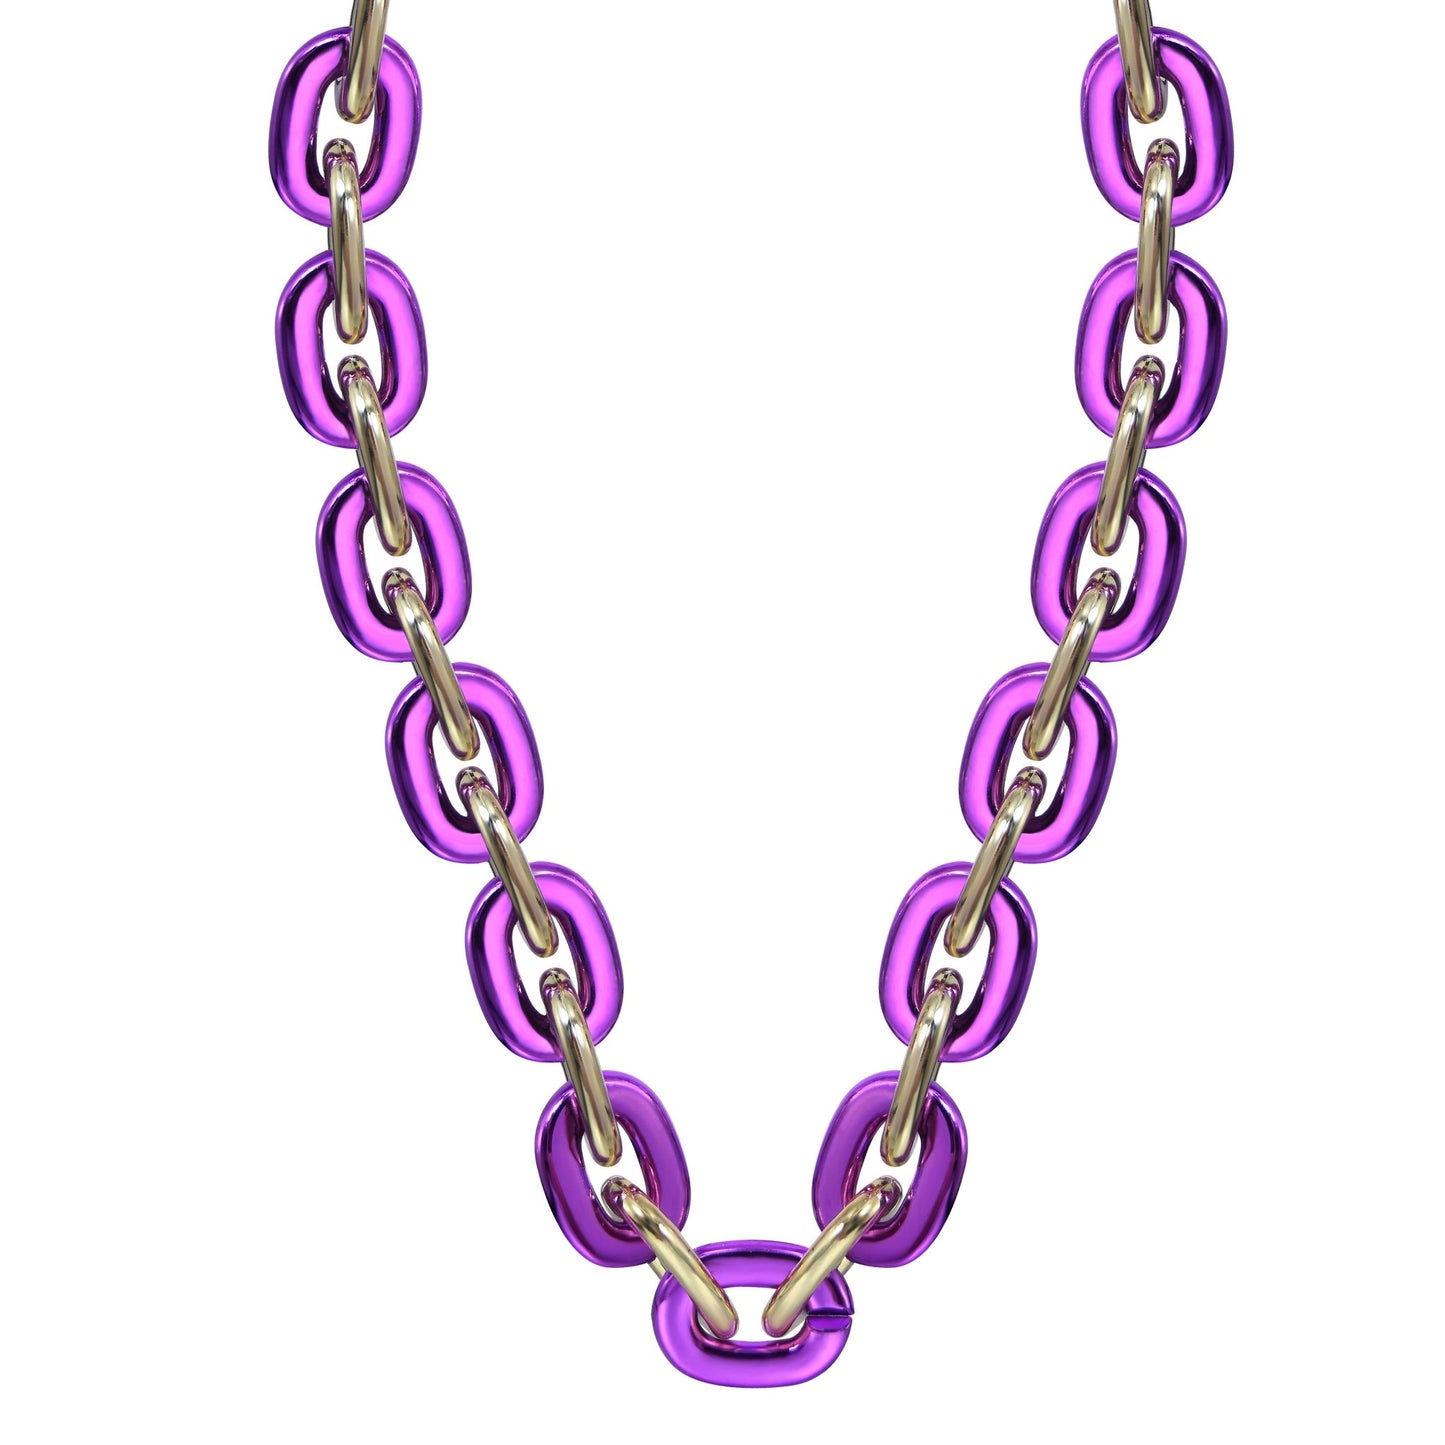 Jumbo Fan Chain Necklace - Gamedays Gear - Purple / Soft Gold